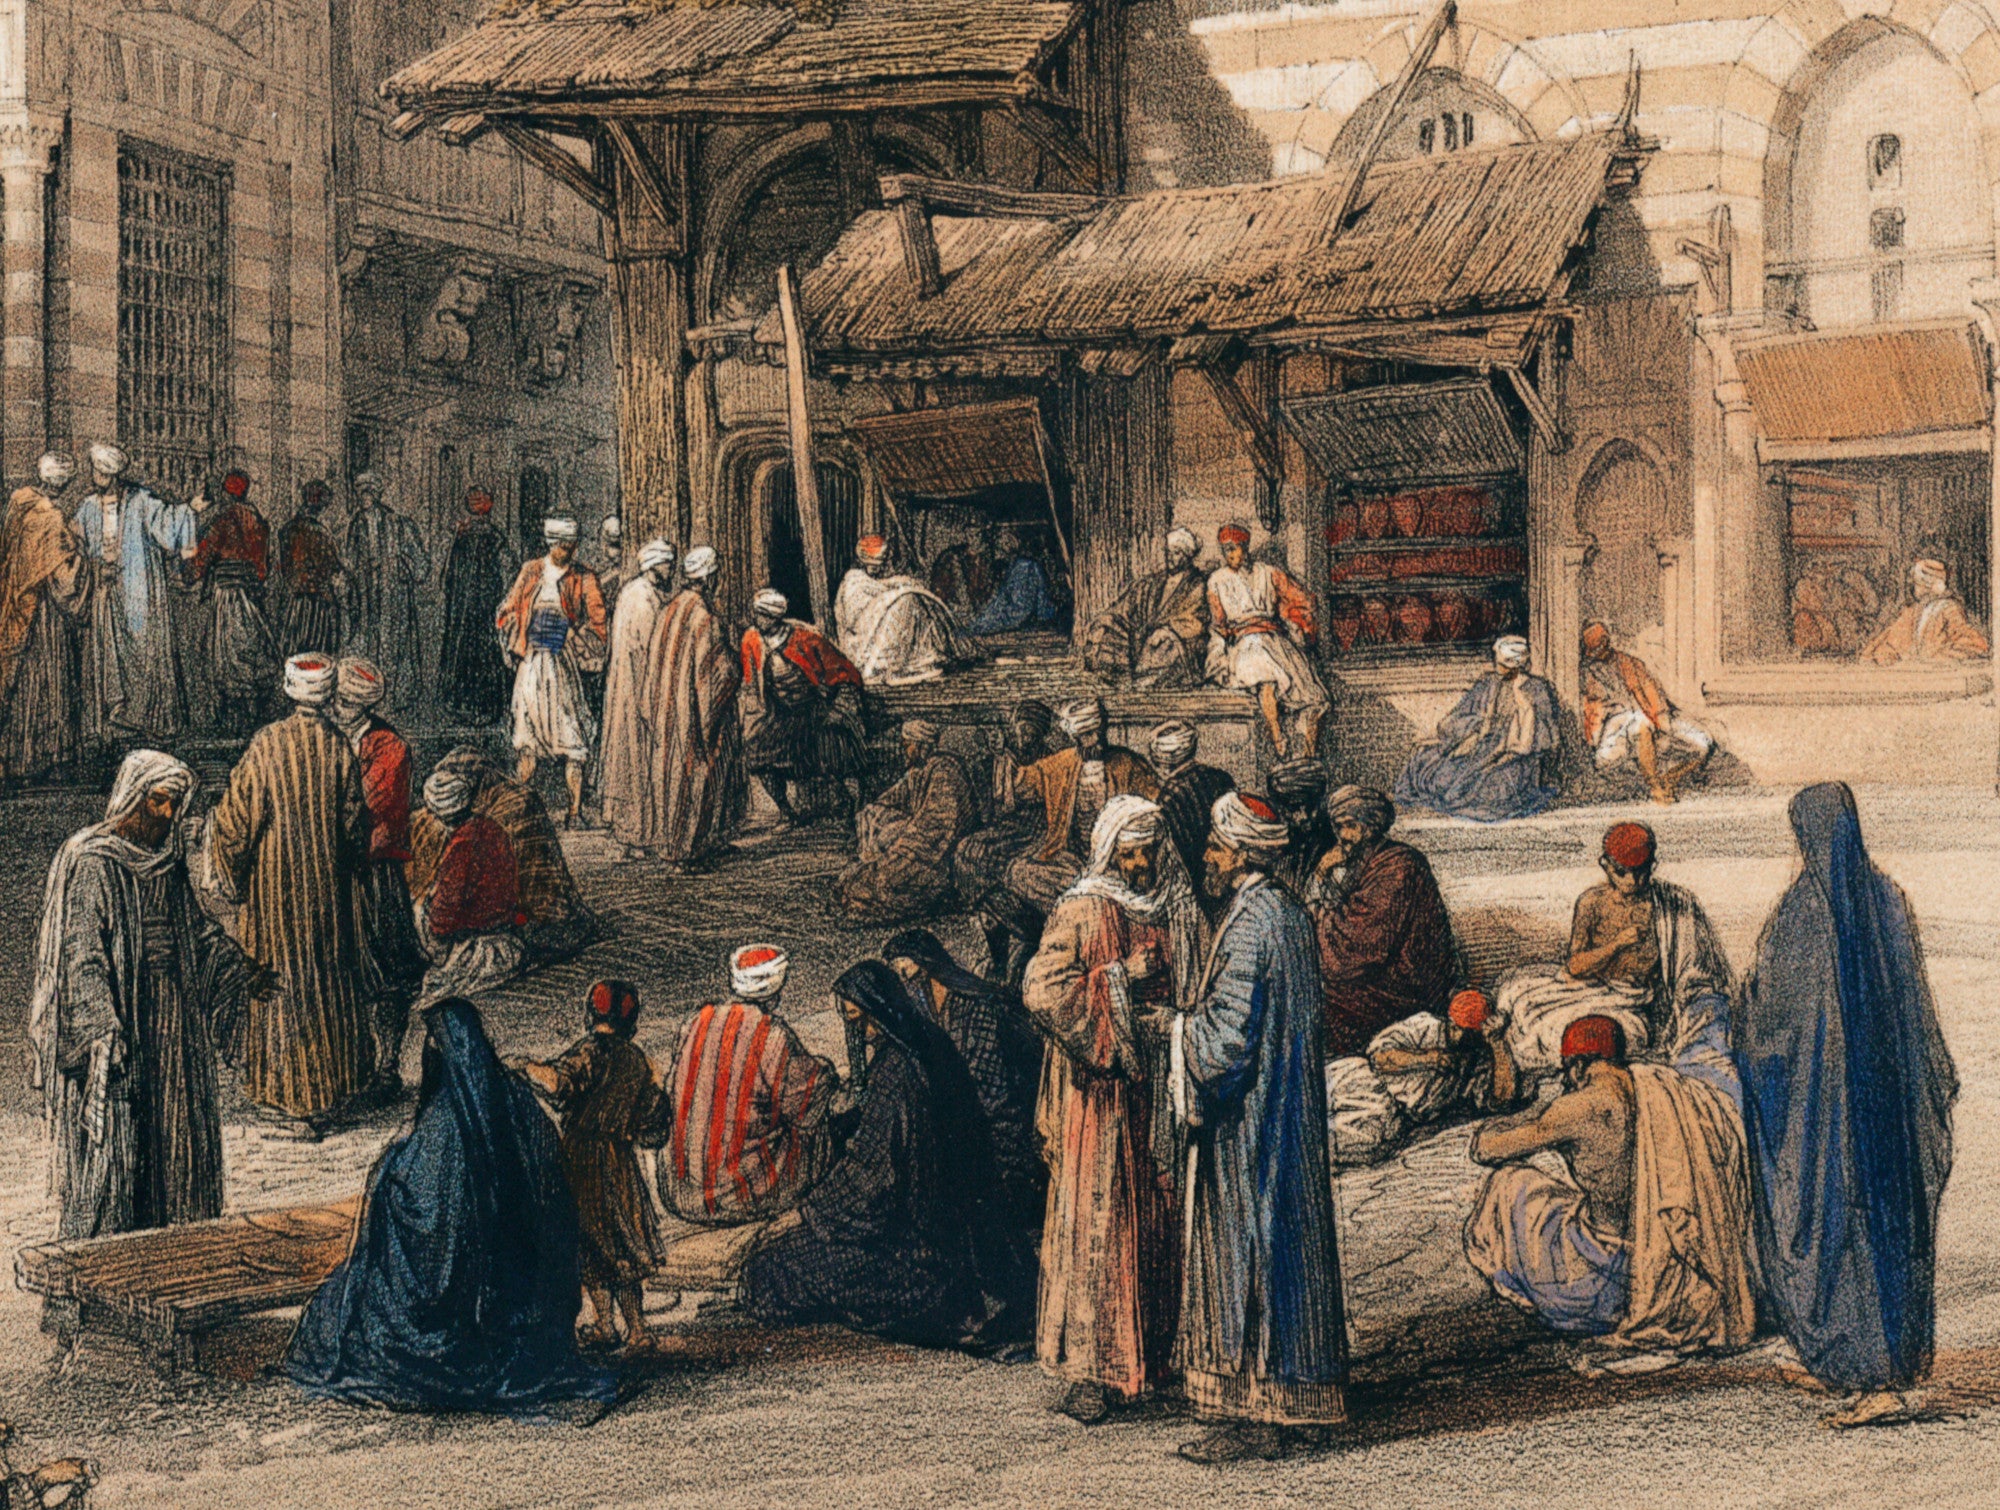 Bazaar of the coppersmiths Cairo, David Roberts Fine Art Print